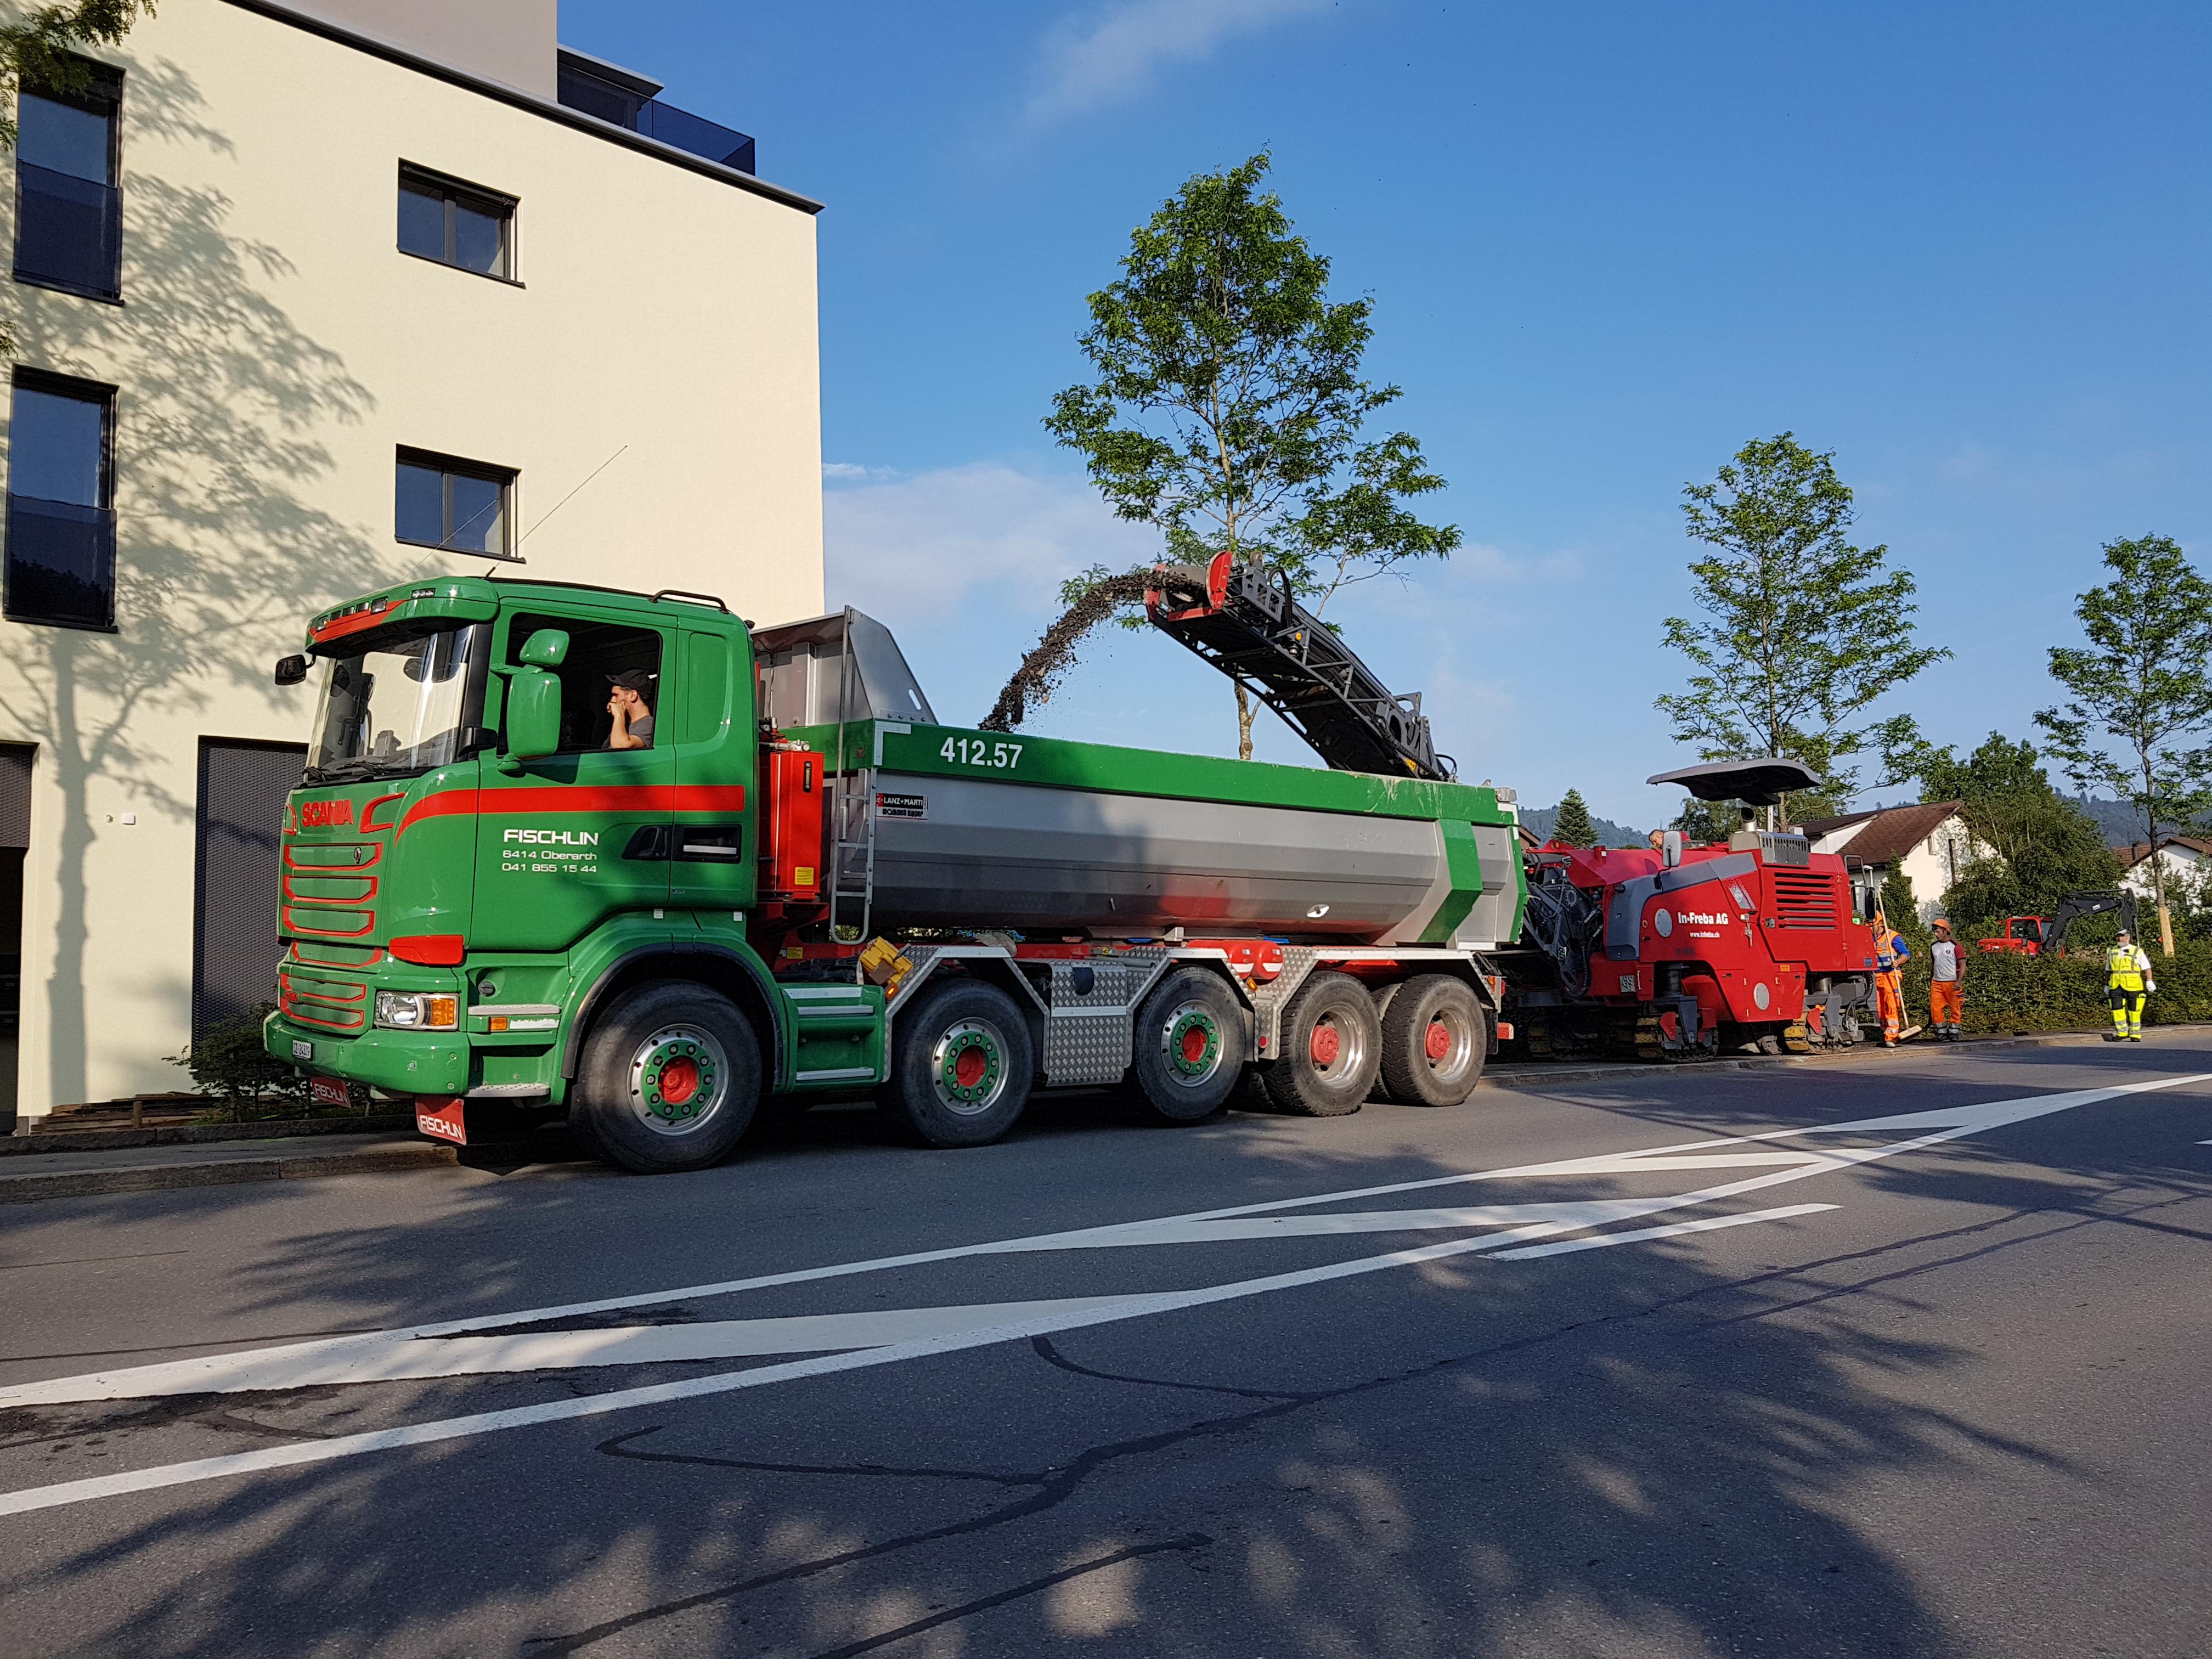 Bilder Fischlin Transport und Entsorgung GmbH